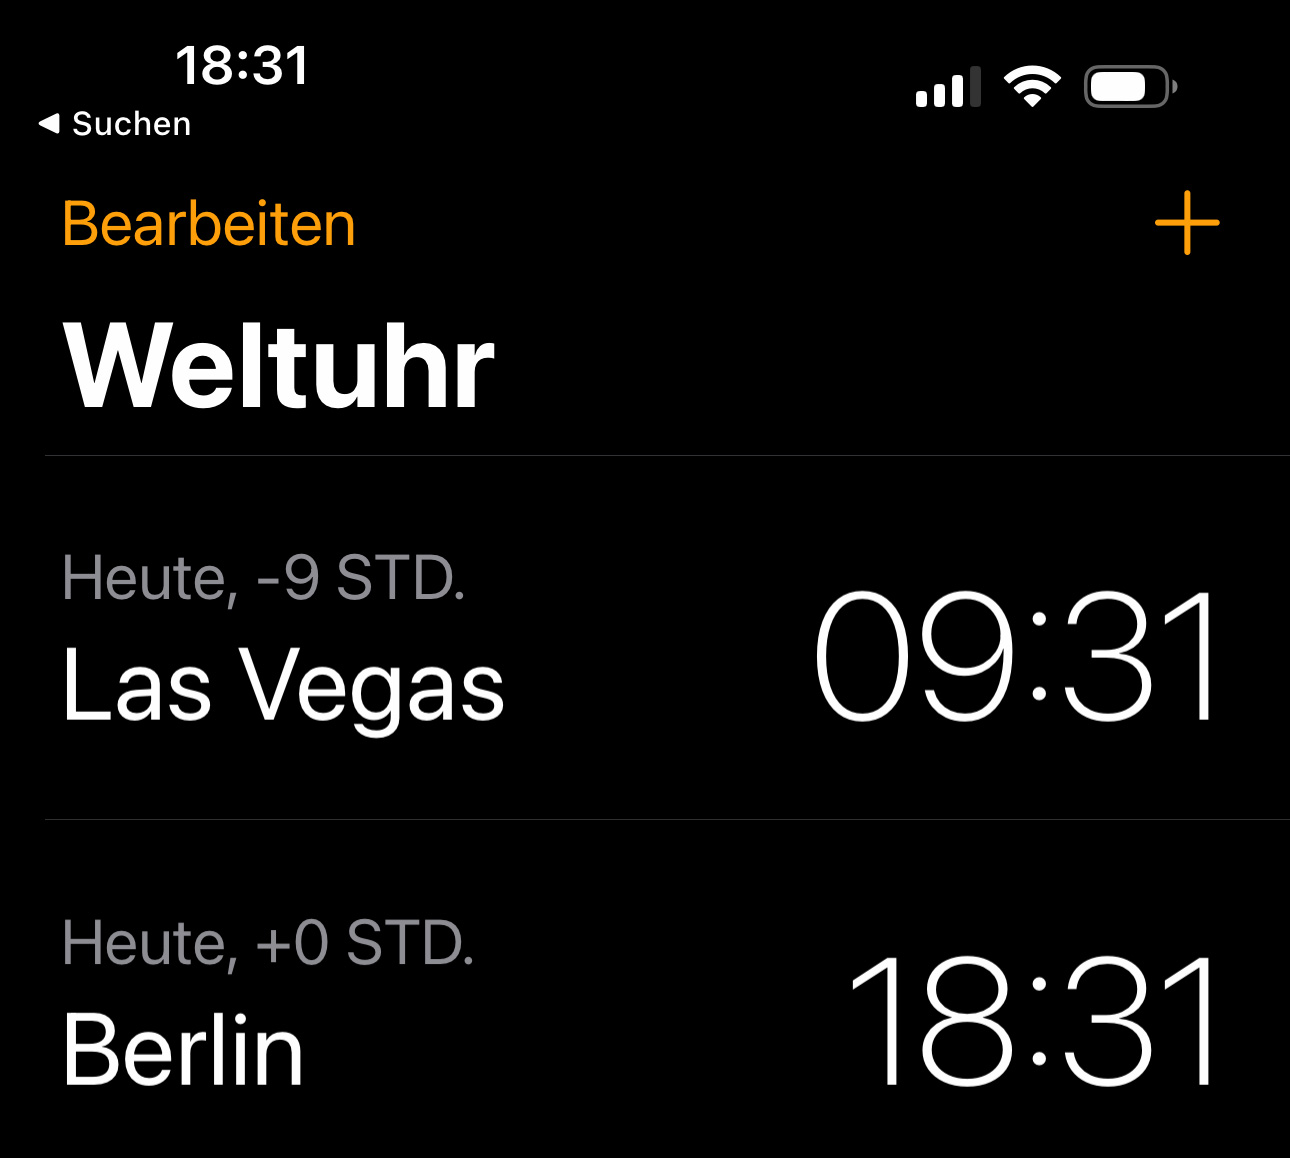 In der iPhone-App "Uhr" kann man unter "Weltuhr" auch die Uhrzeit von Las Vegas, USA einblenden lassen.